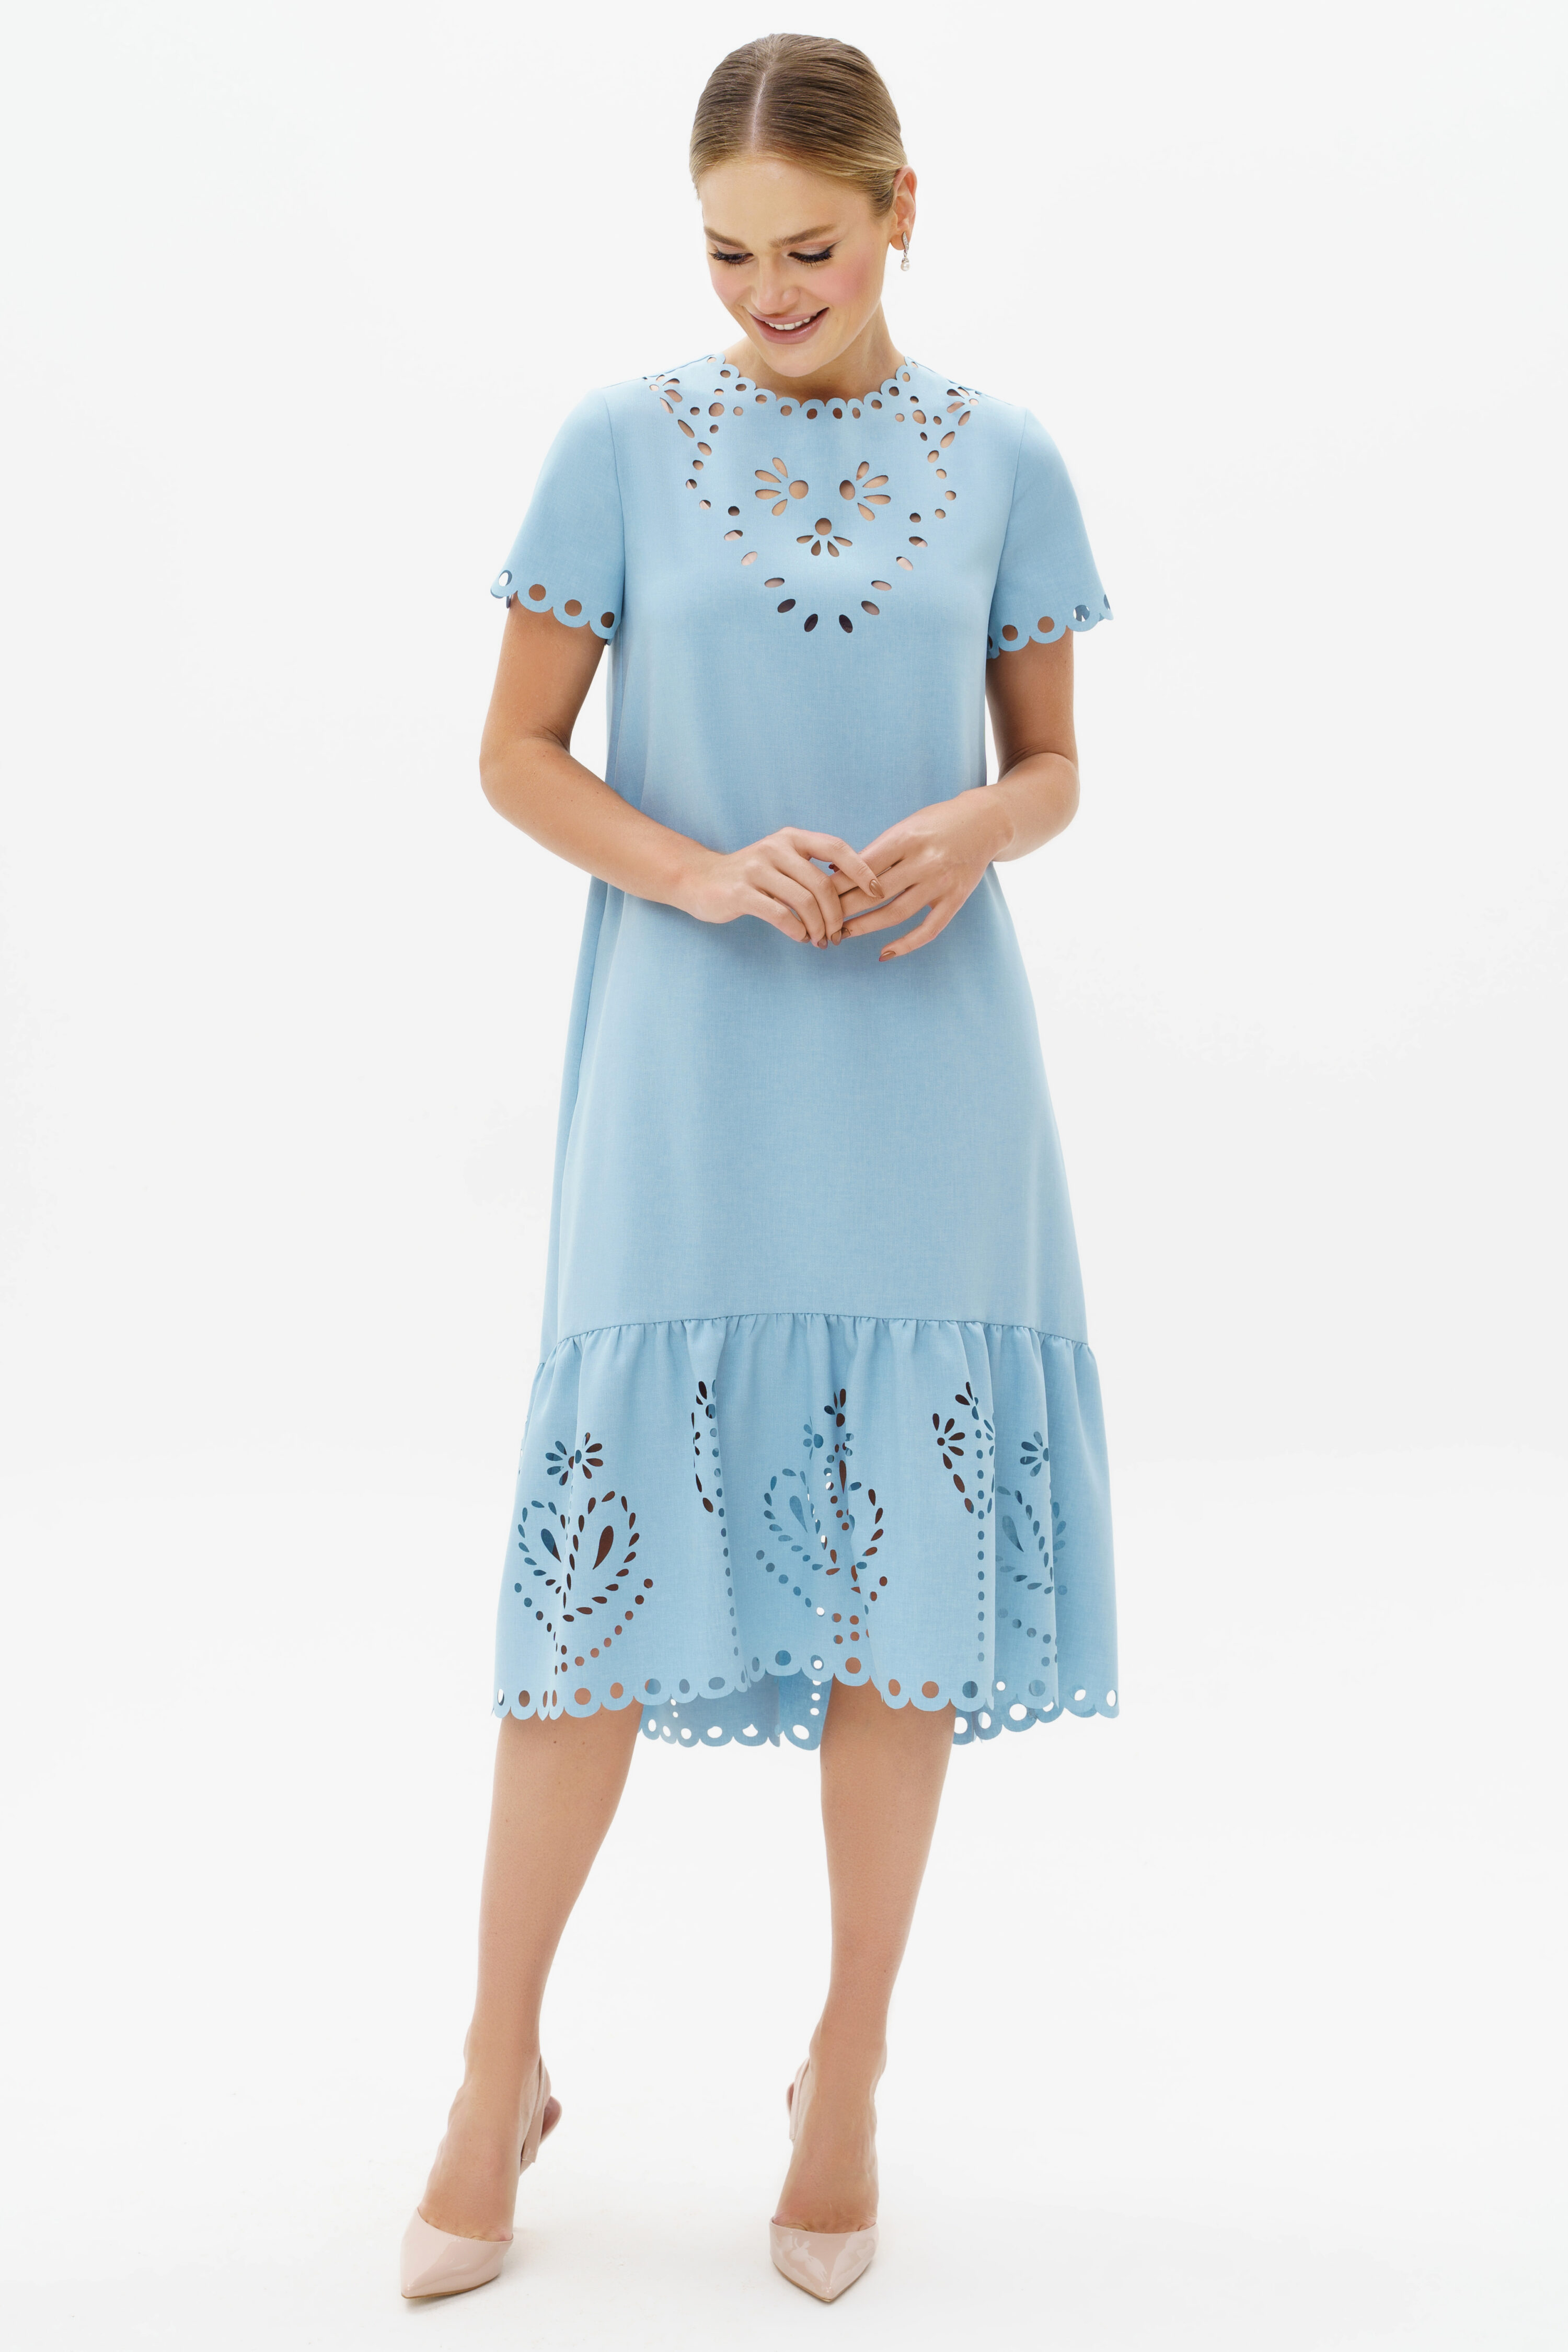 Купить платье URS 23-231-3 женское летнее голубое